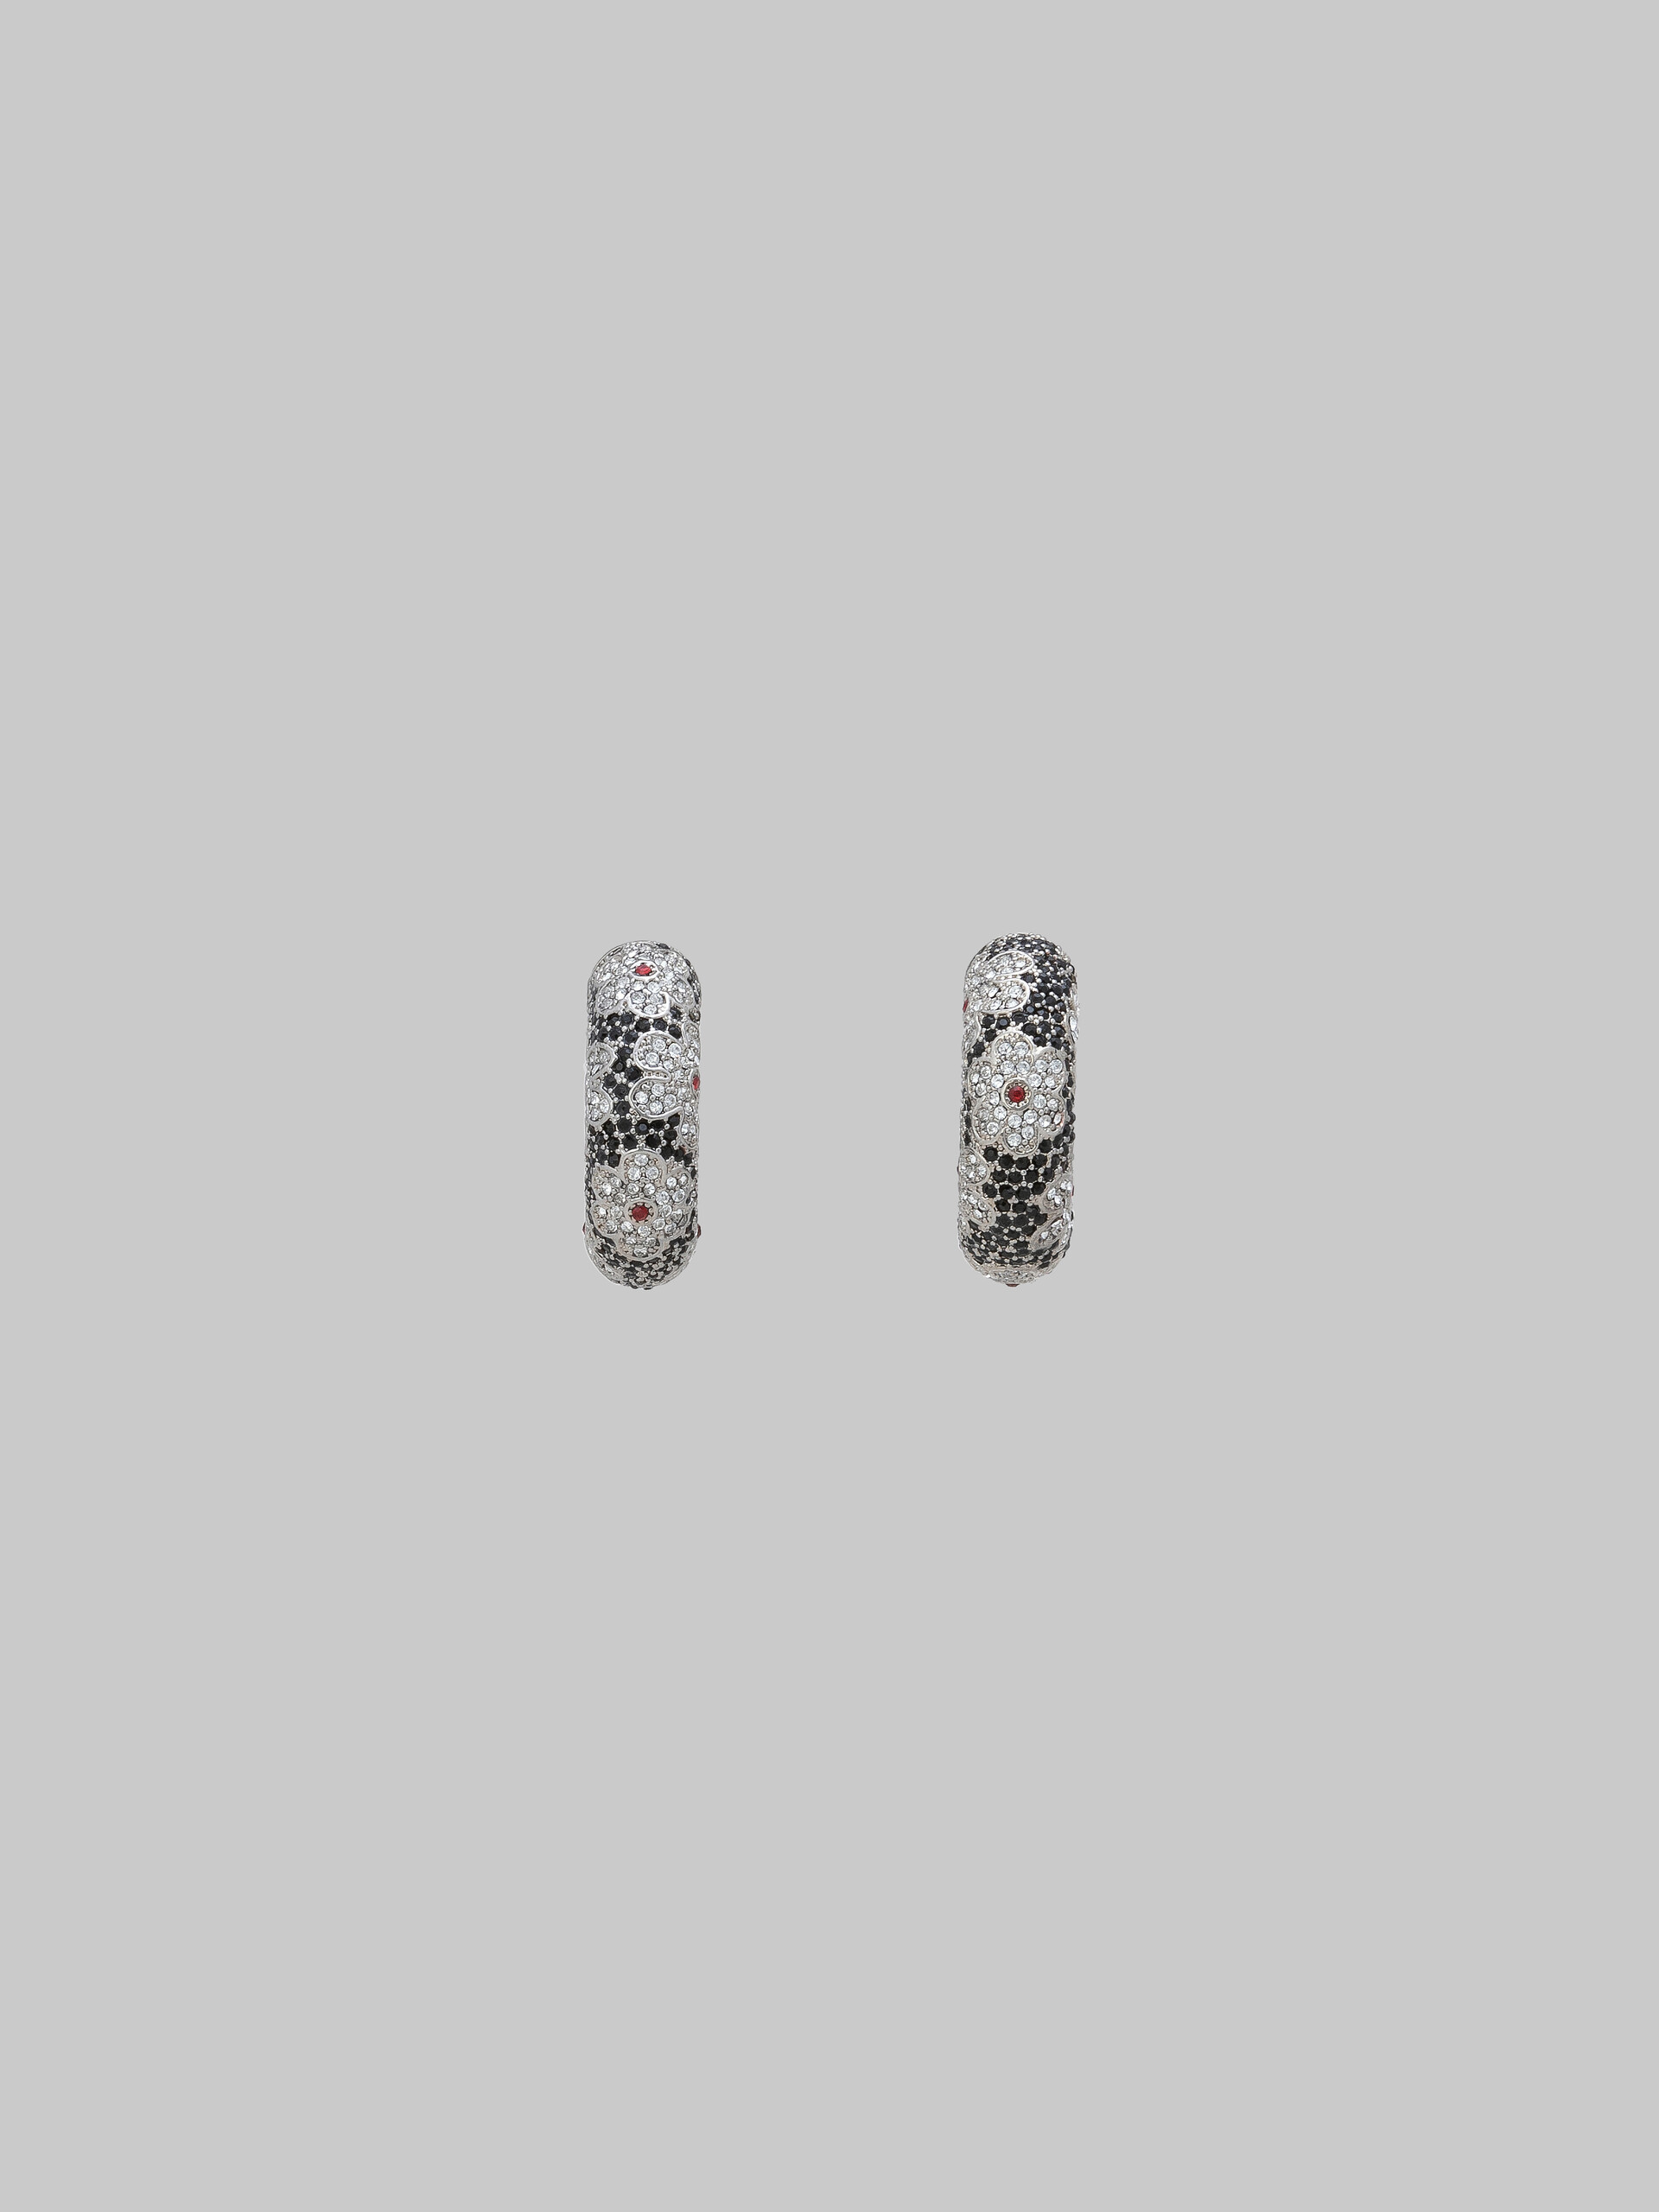 Black tube earrings with rhinstone daisies - Earrings - Image 1